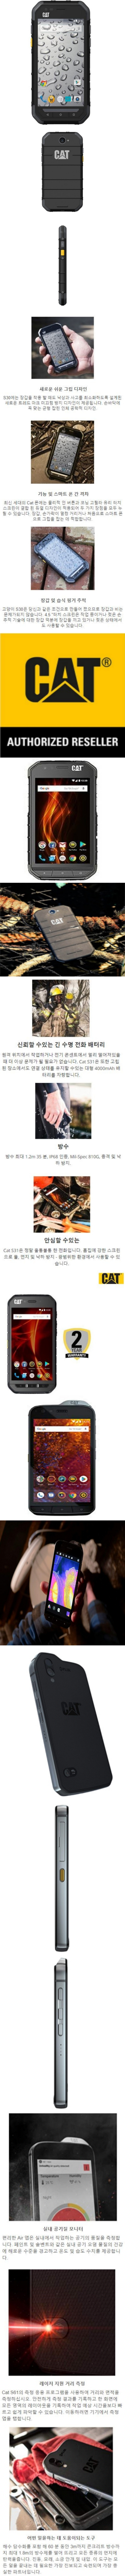  추가금 없음 / CAT Unlocked Smartphone - S30, S31, S41, S61 - 현장에서 쓰는 강력한 스마트폰